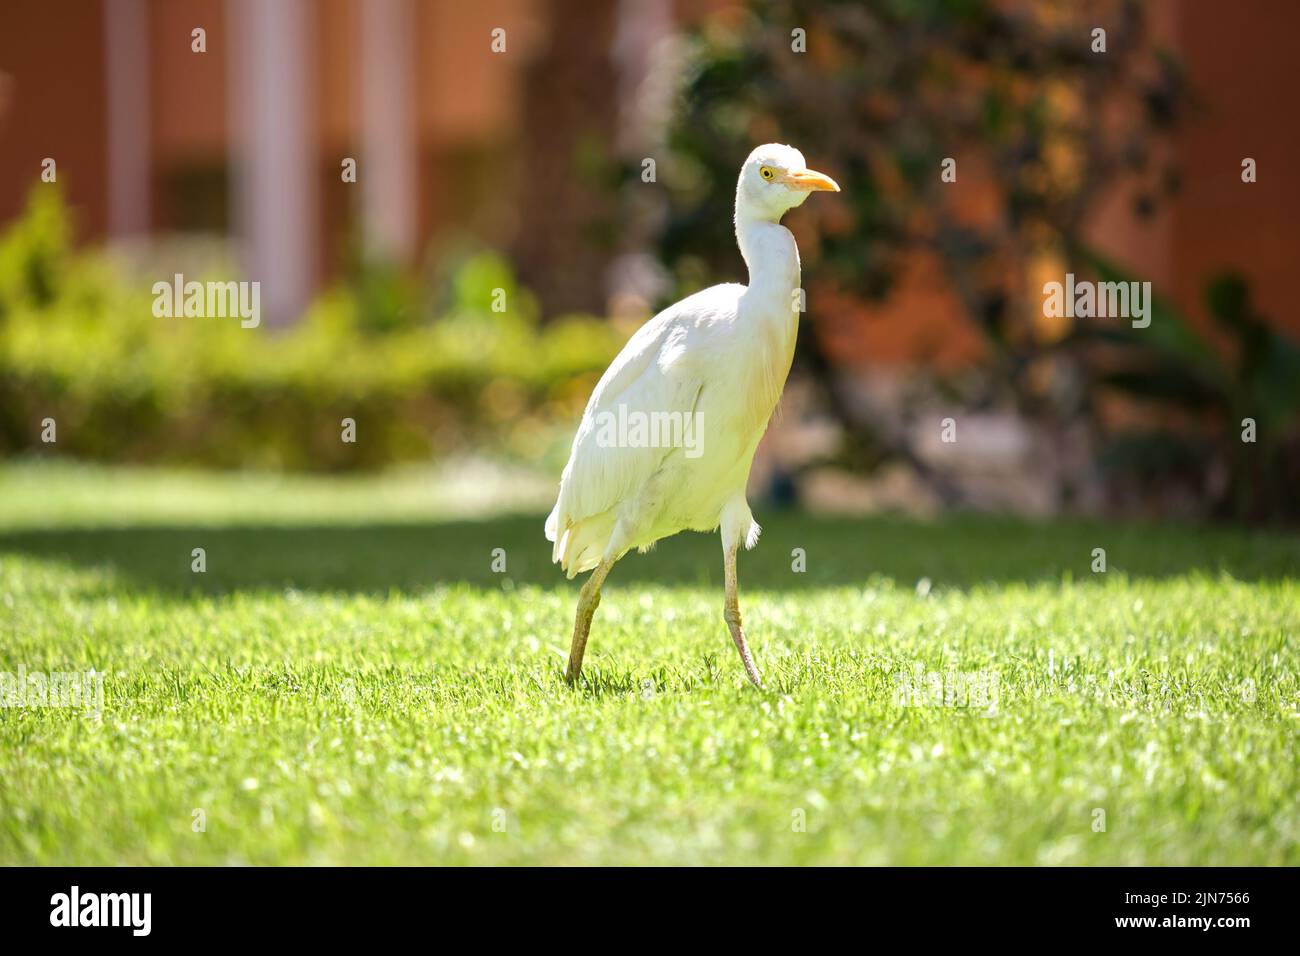 Oiseau sauvage d'aigrette de bétail blanc, également connu sous le nom de Bubulcus ibis, marchant sur une pelouse verte en été Banque D'Images